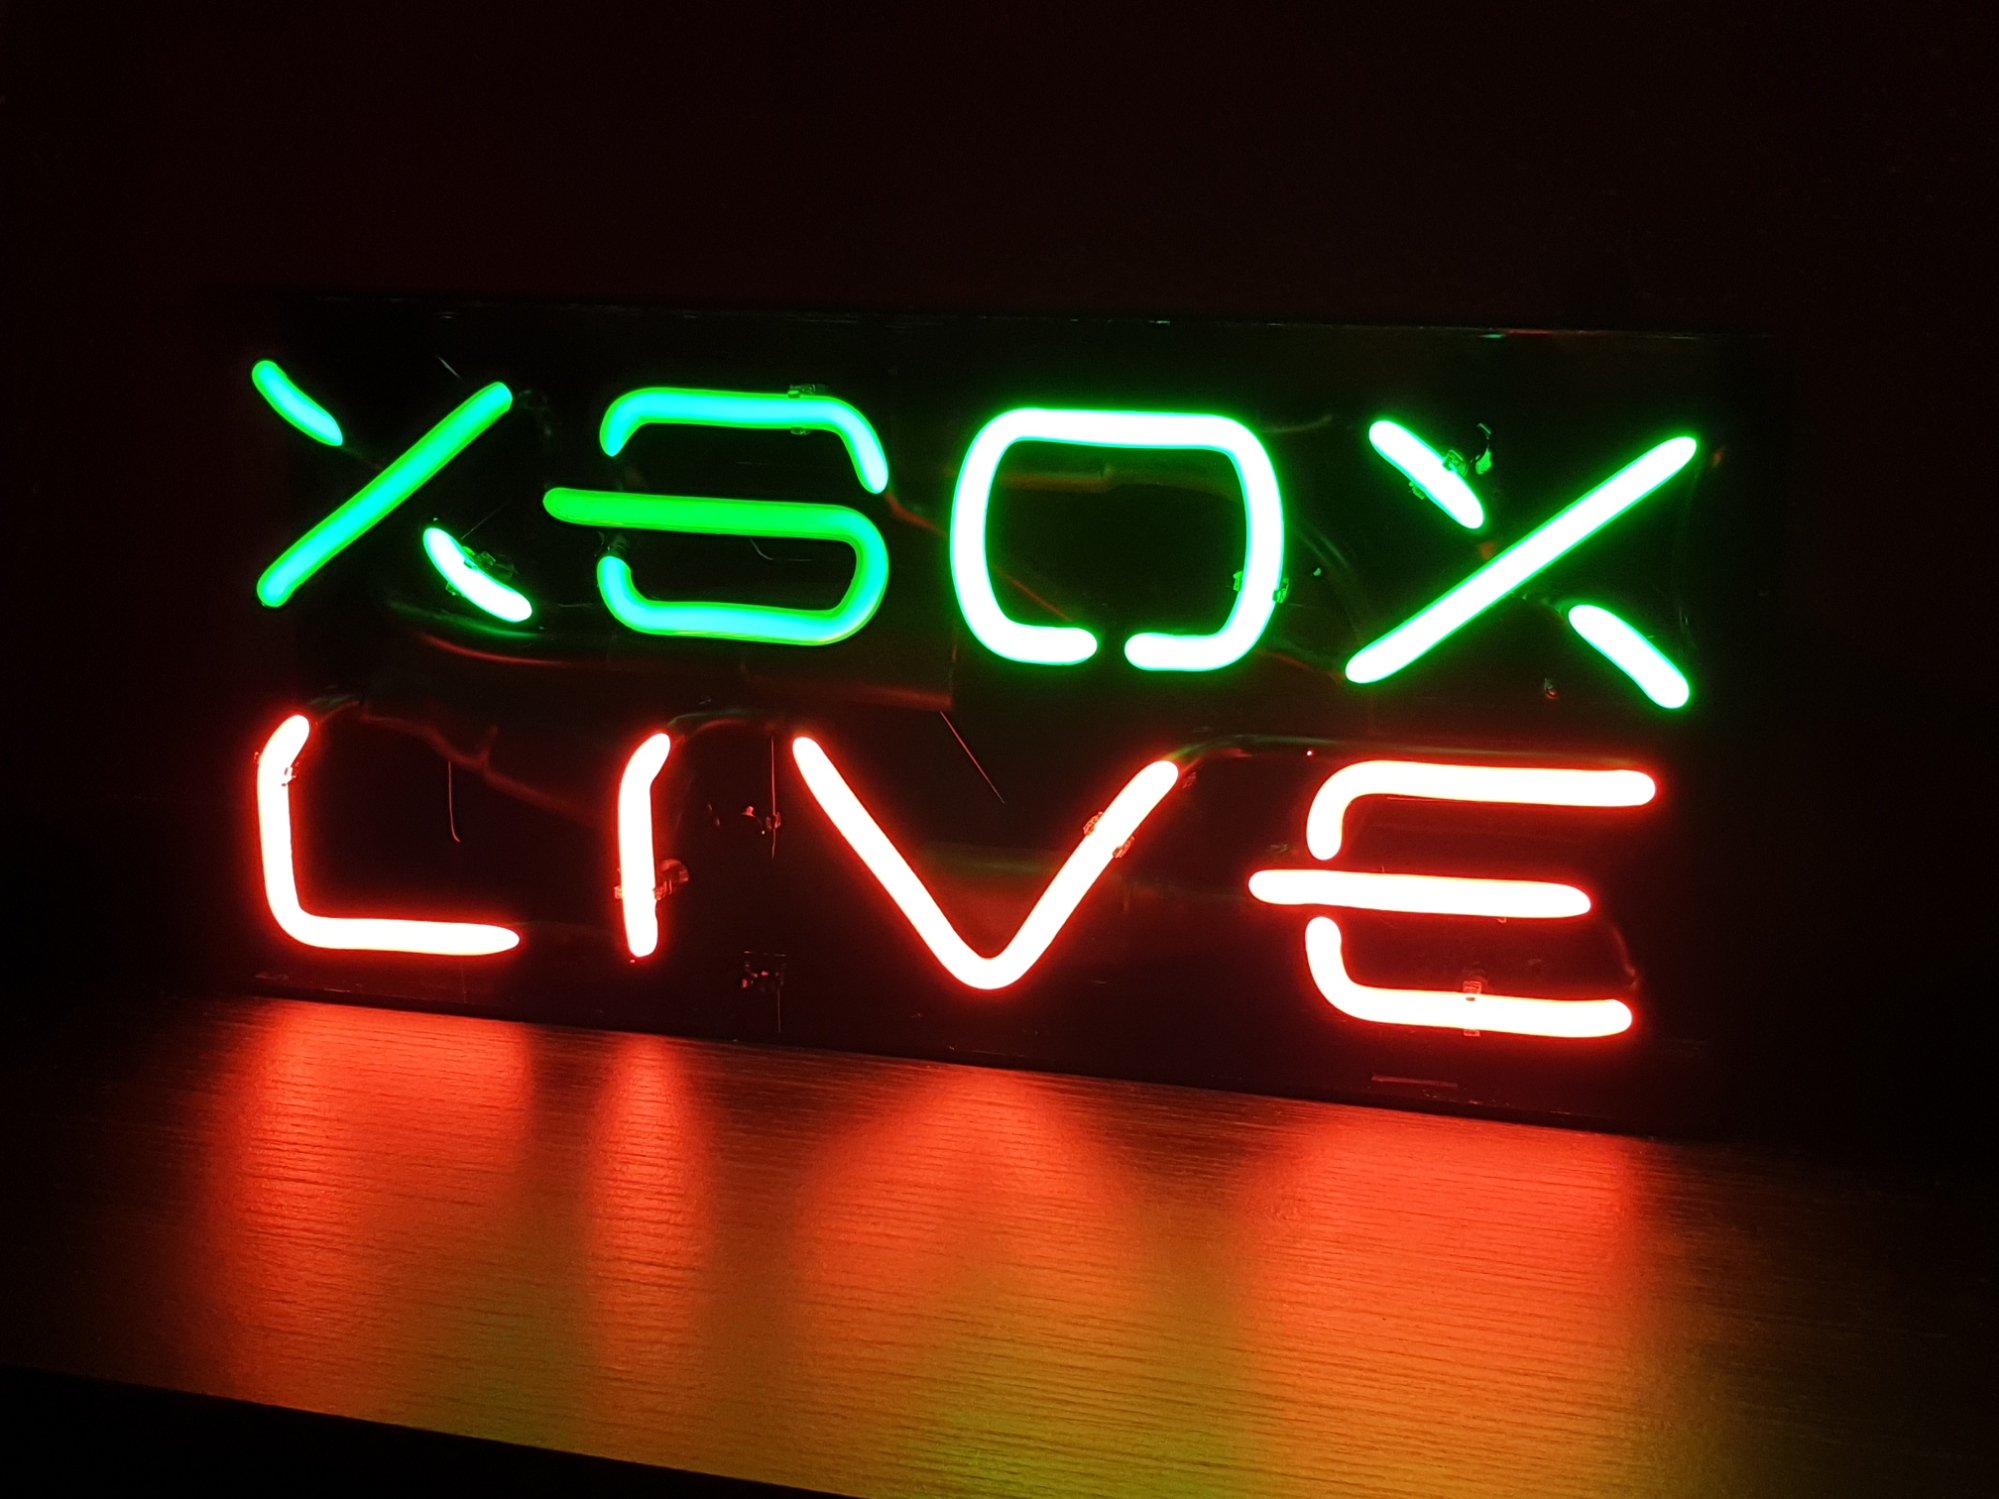 xbox live